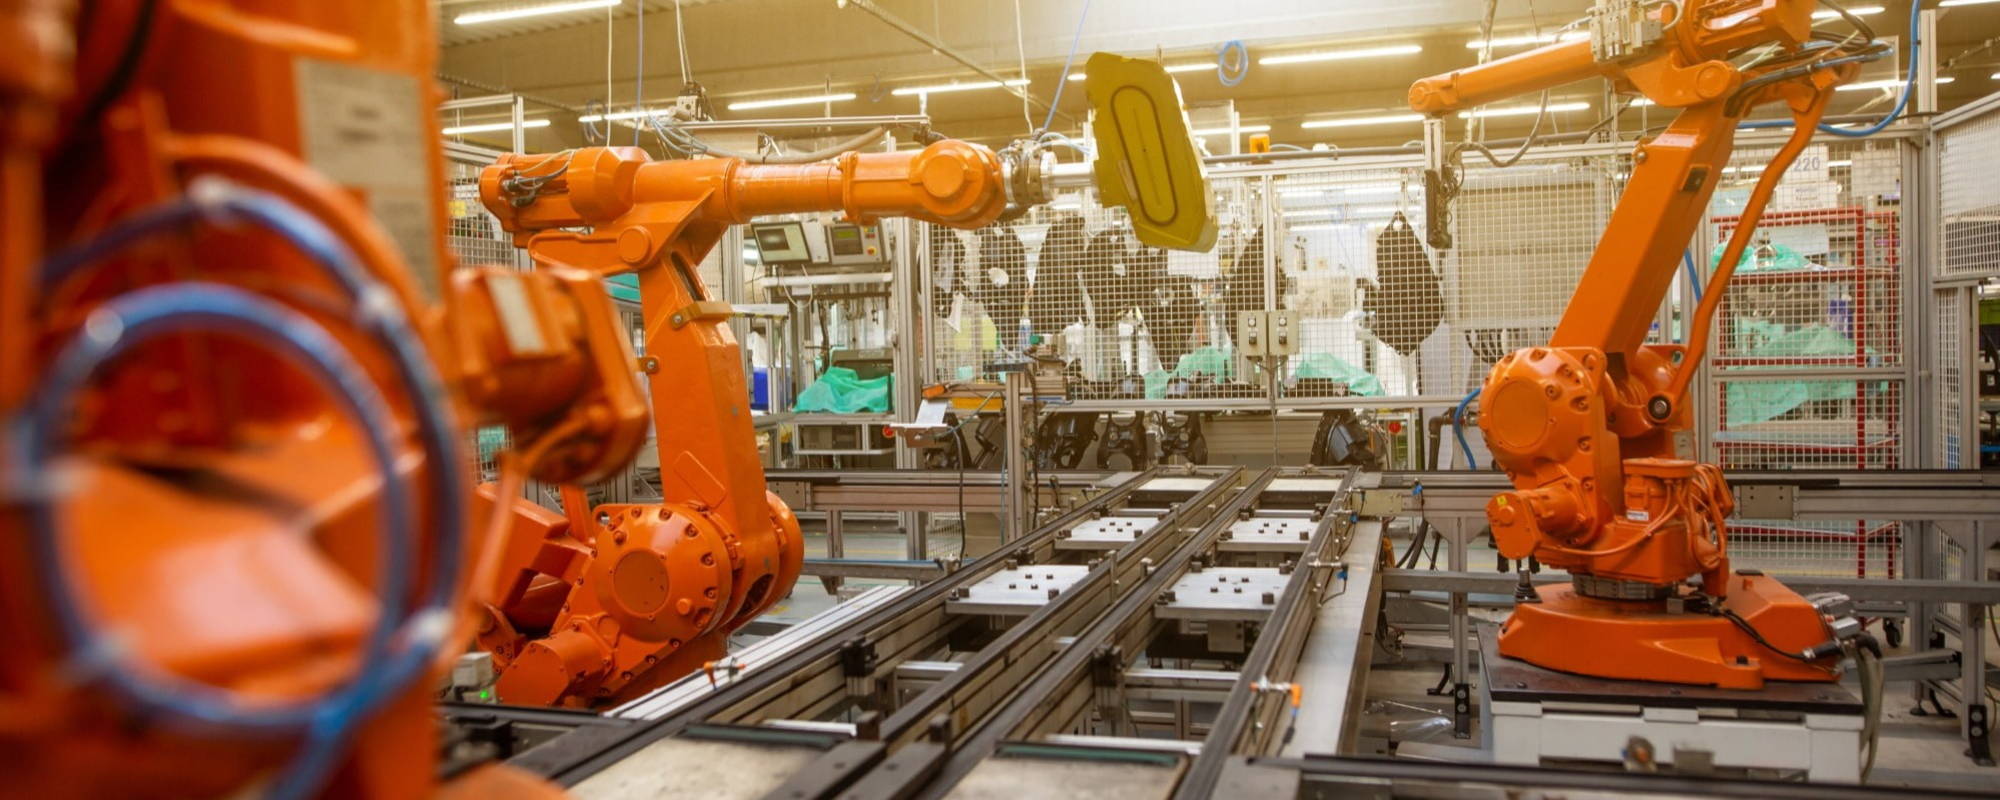 Robot Production Line